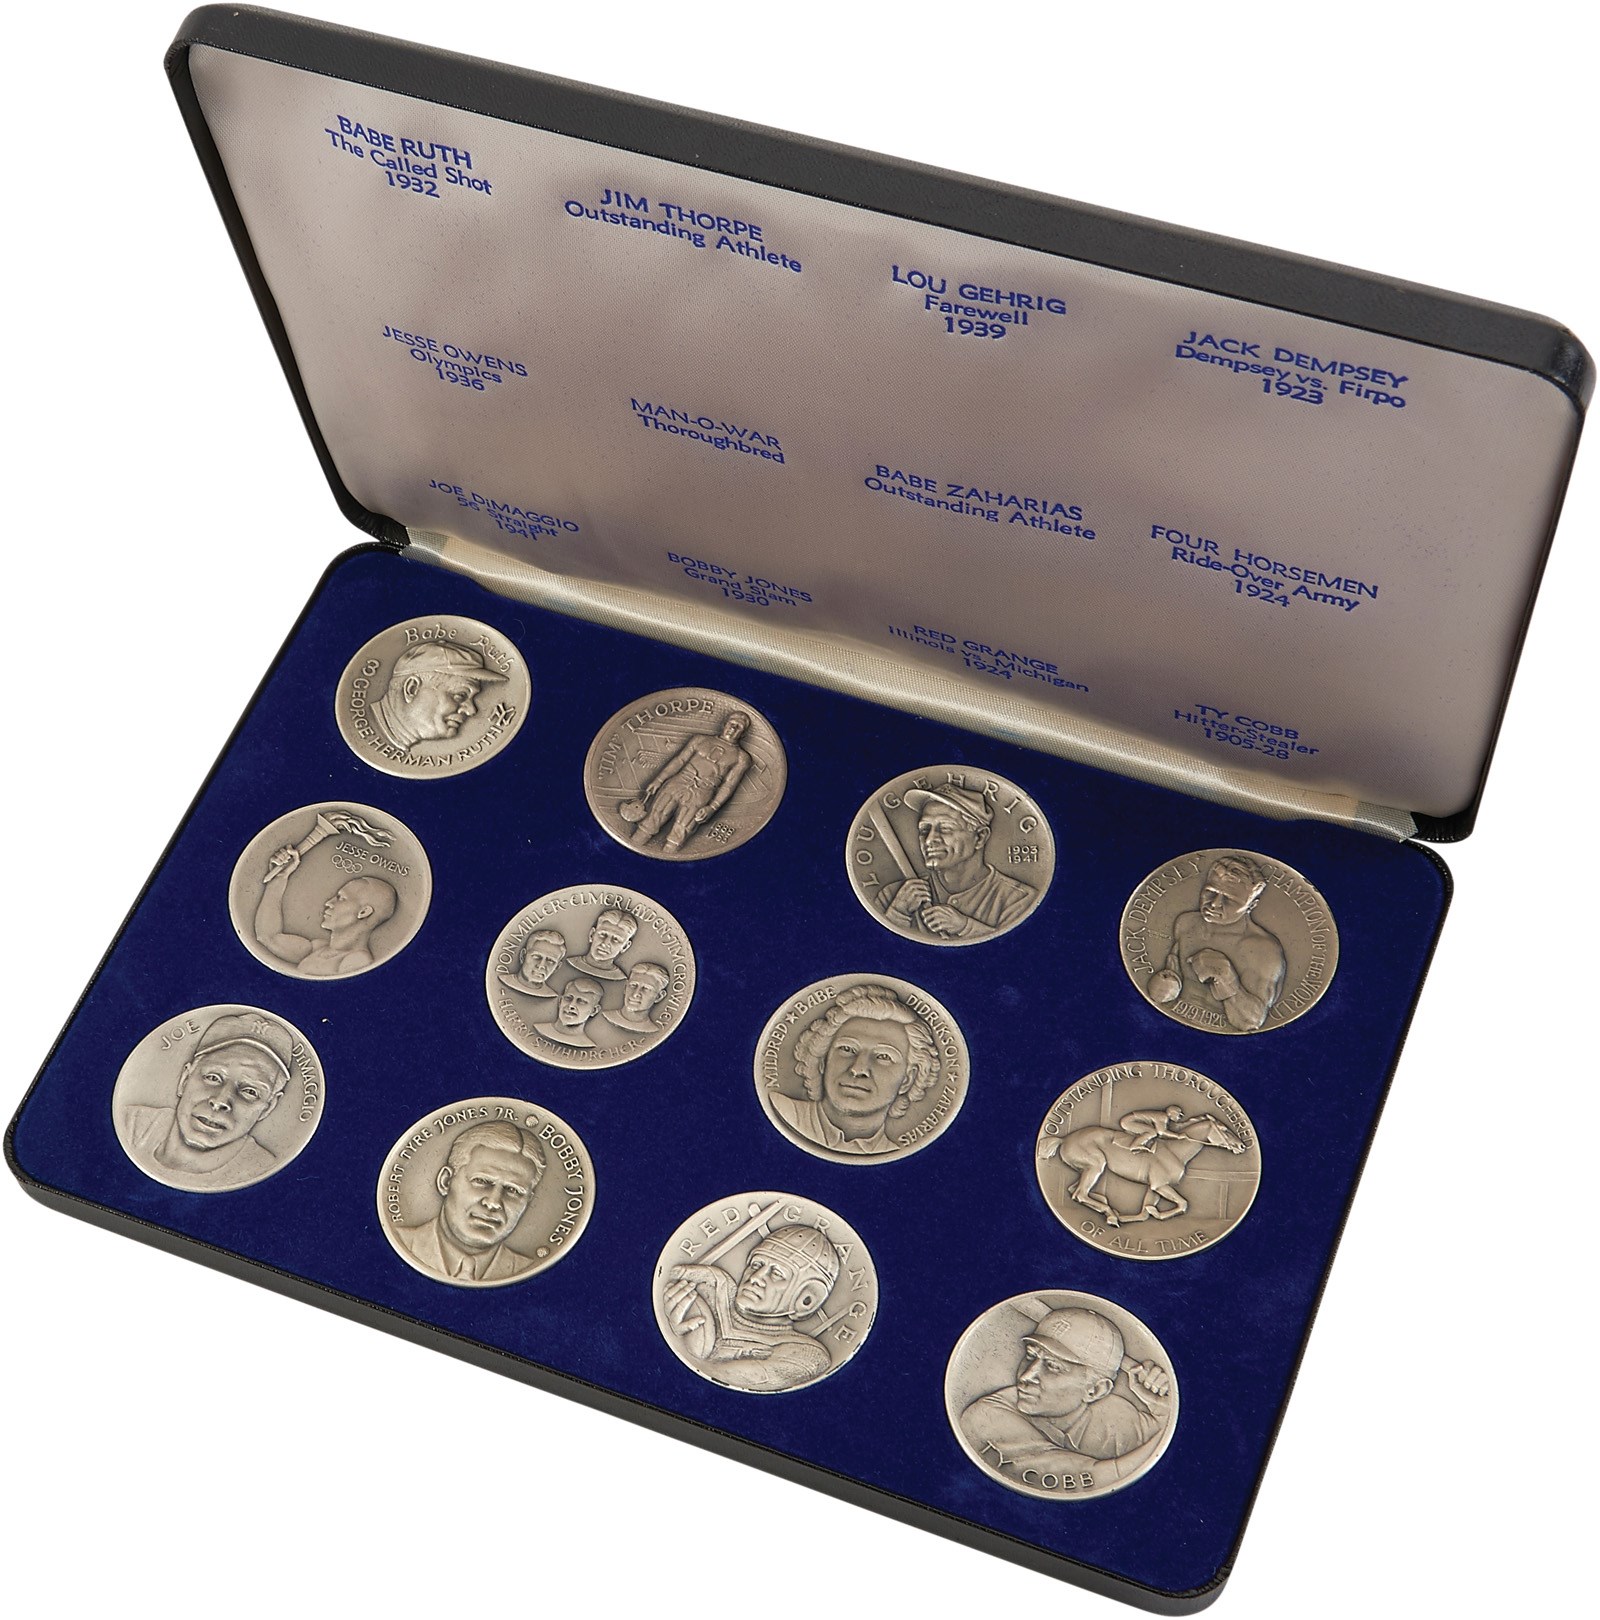 Baseball Memorabilia - 1967 Cavalcade of Sports Coin/Medallion in Original Box